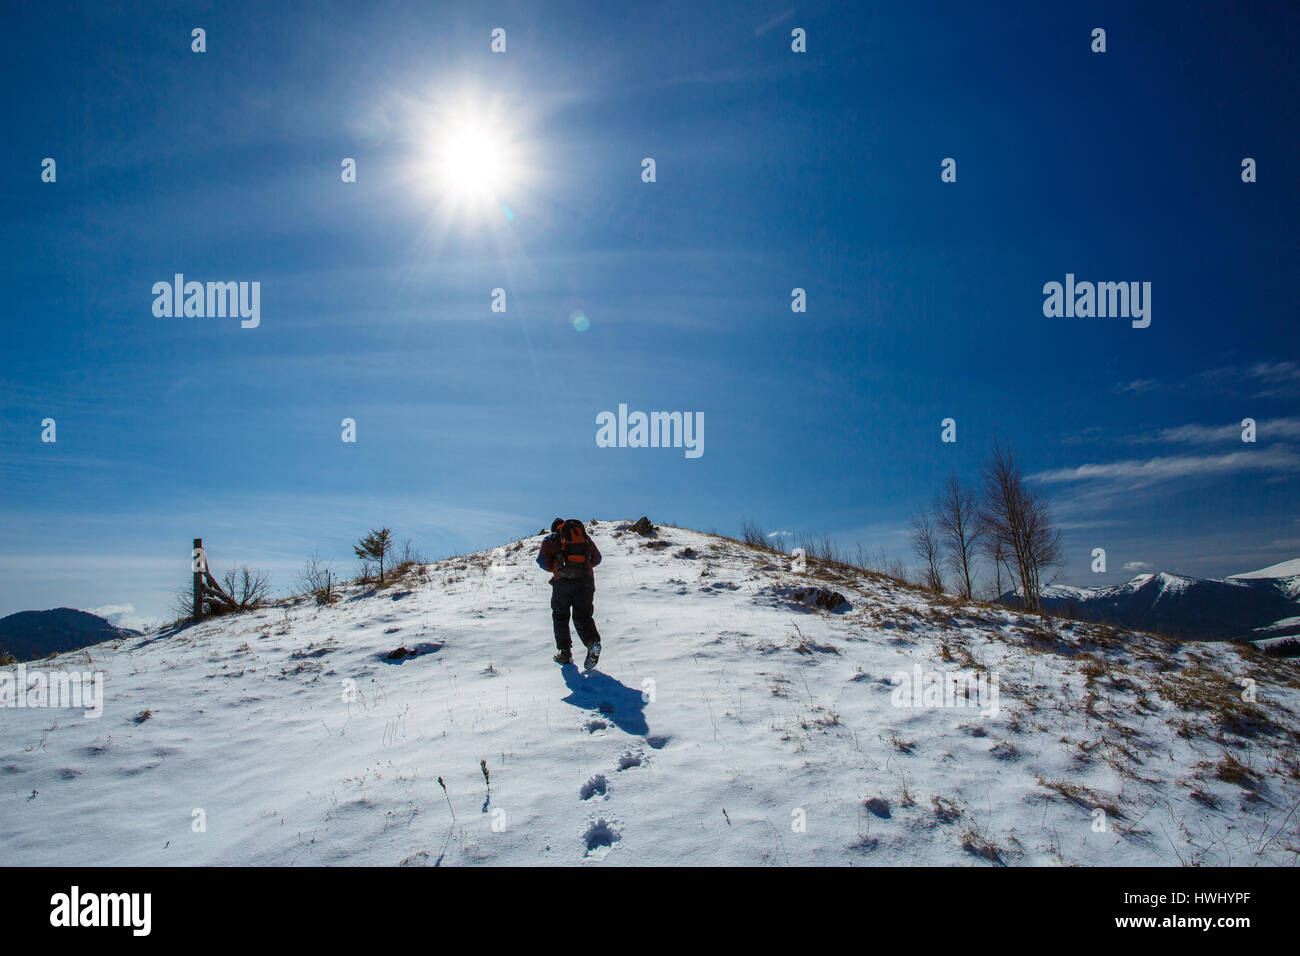 tourist goes on snowy mountain top Stock Photo